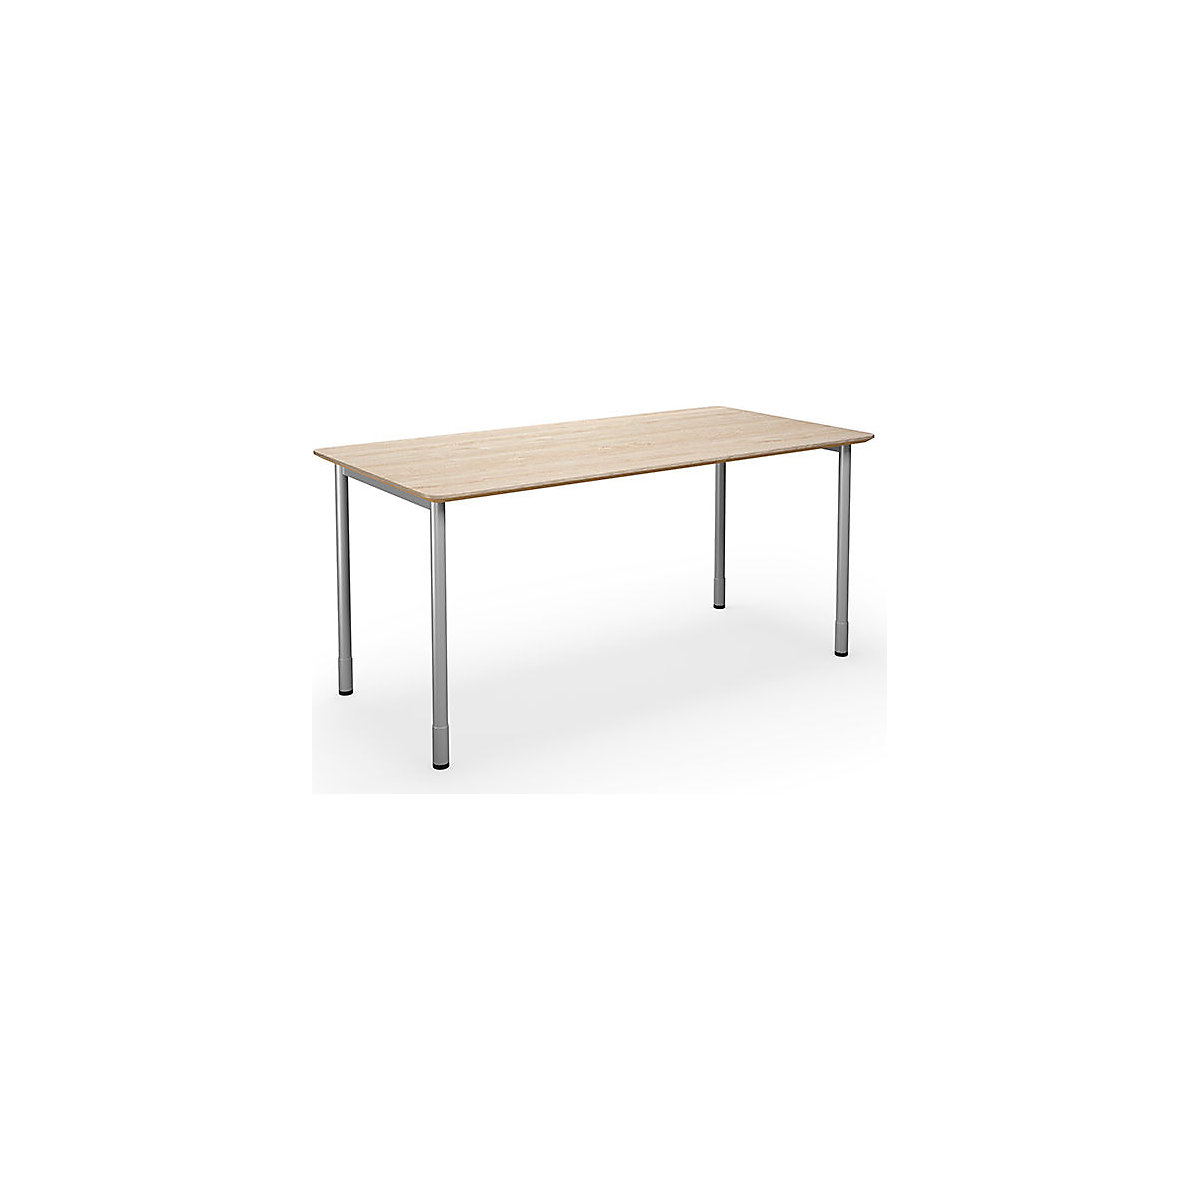 Multifunctionele tafel DUO-C Trend, recht blad, afgeronde hoeken